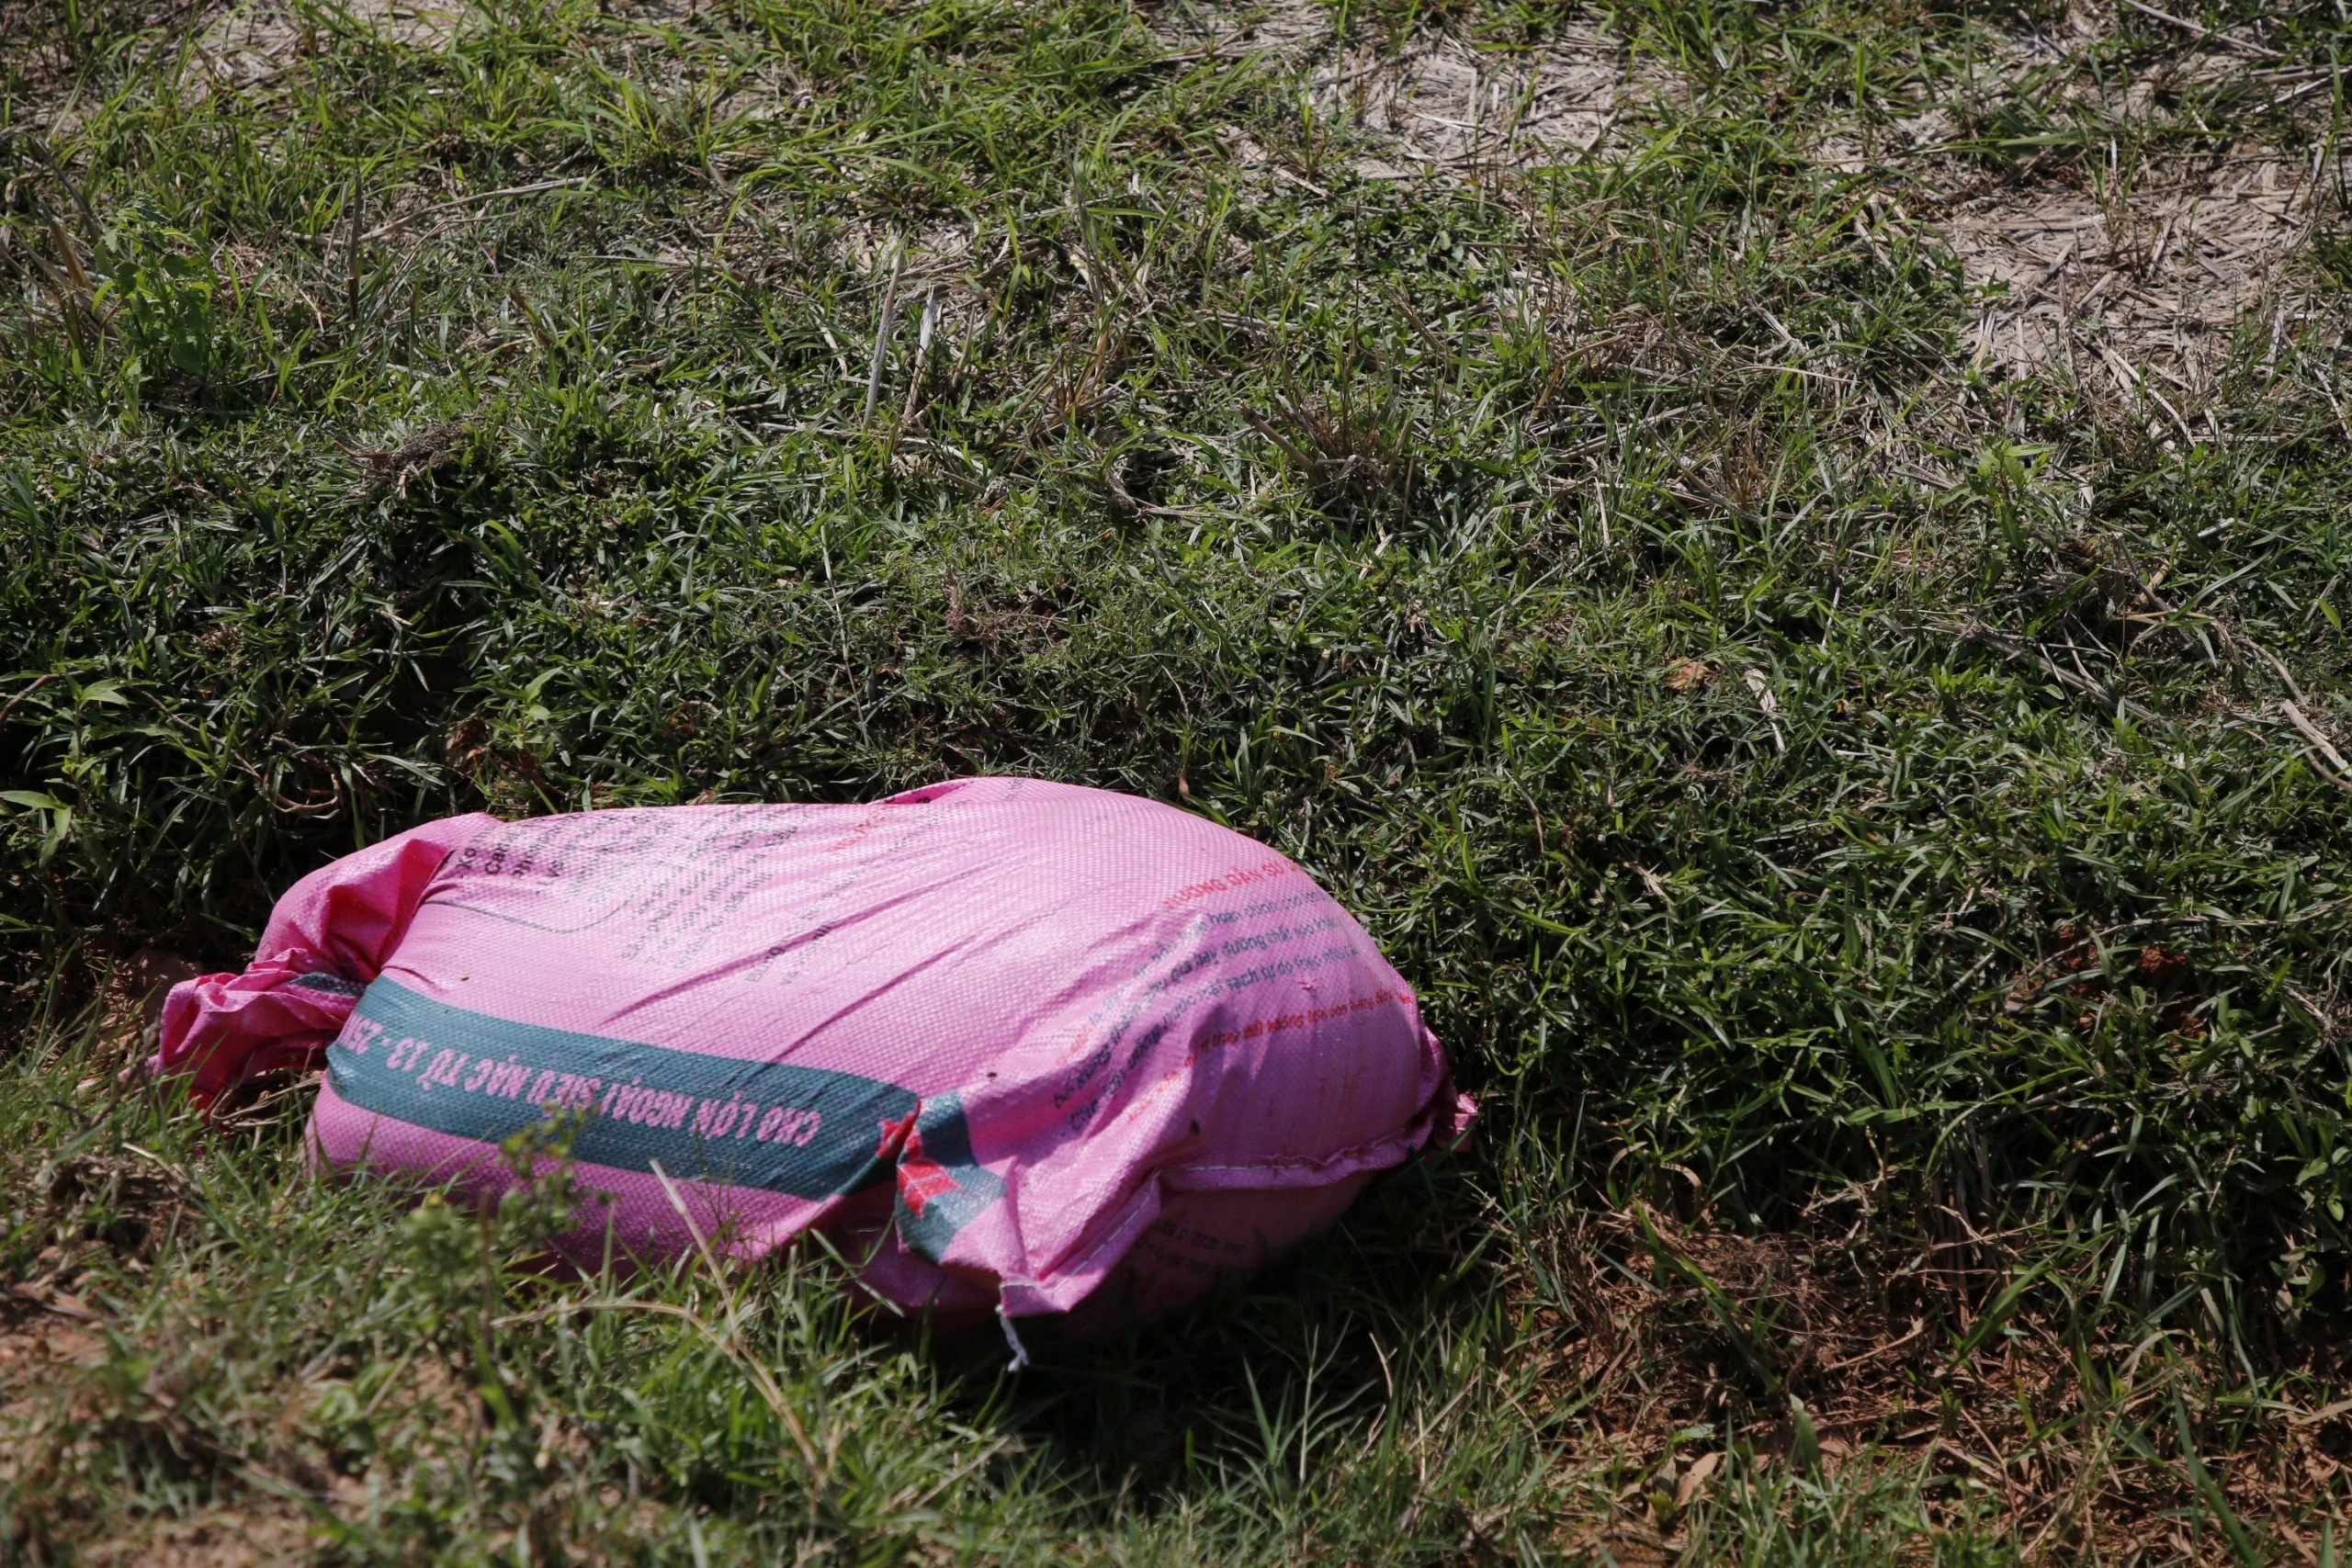 Quảng Bình: Ngao ngán cảnh lợn chết bị vứt bừa bãi ra đồng